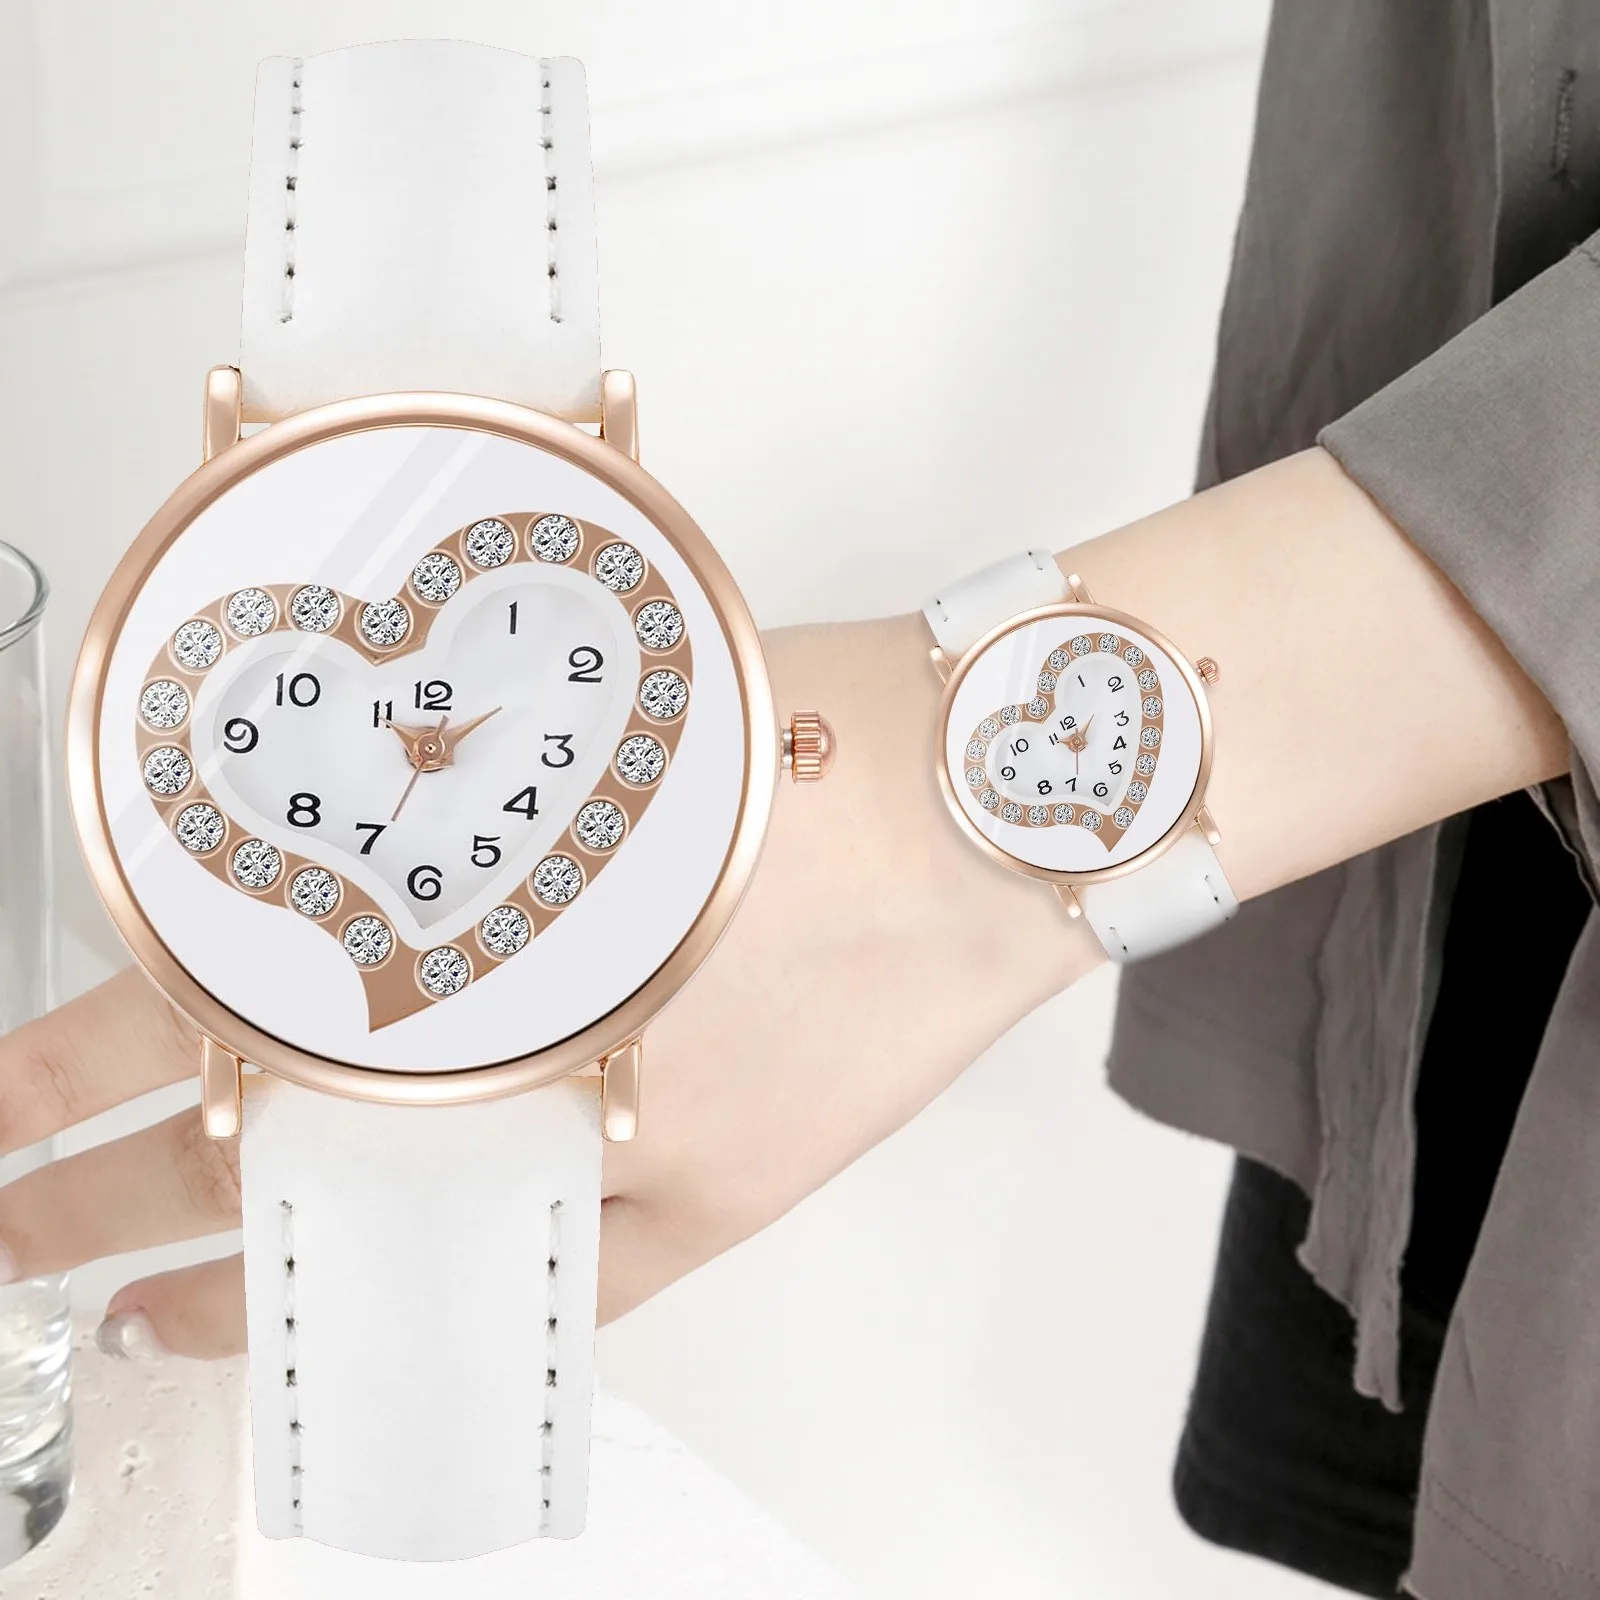 

Elegant Ladies Watch Leather Strap Analog Fashion Quartz Wristwatches Luxury Brand Woman Watch Gift Zegarek Damski Reloj Mujer